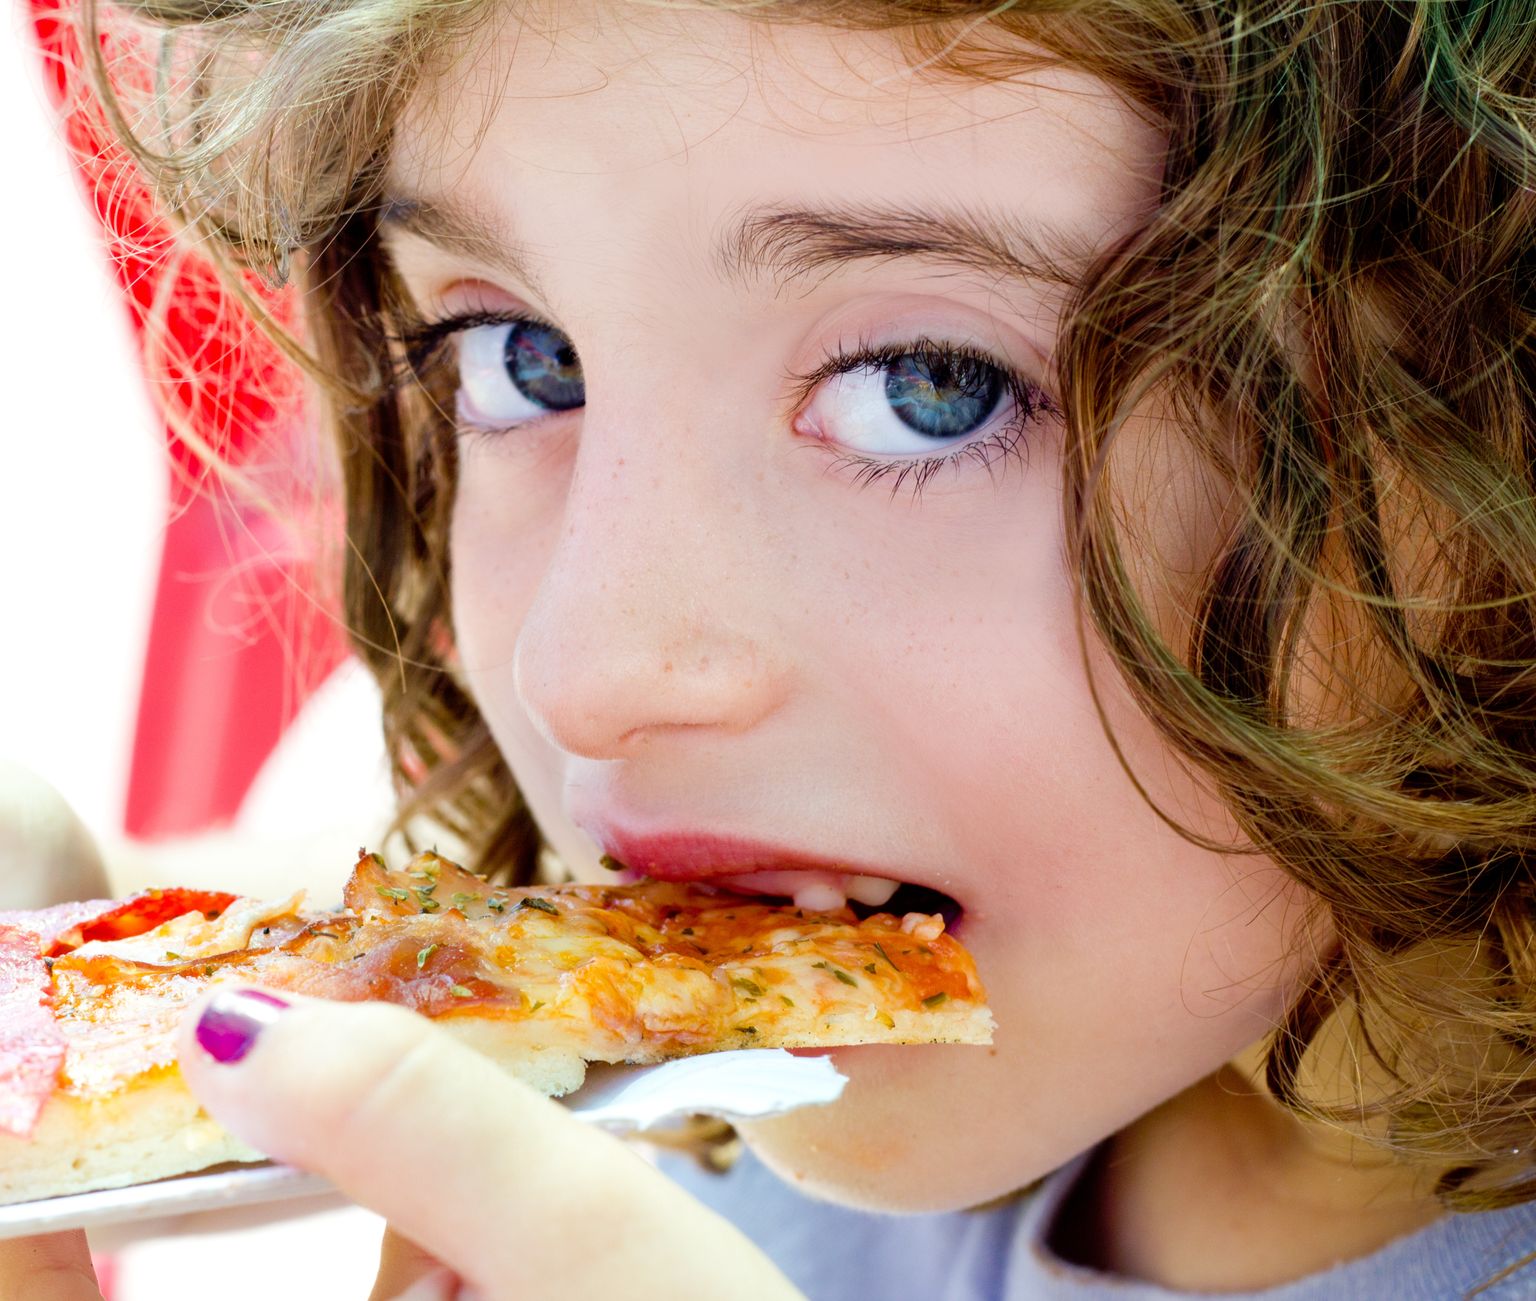 blue eyes child girl eating pizza slice